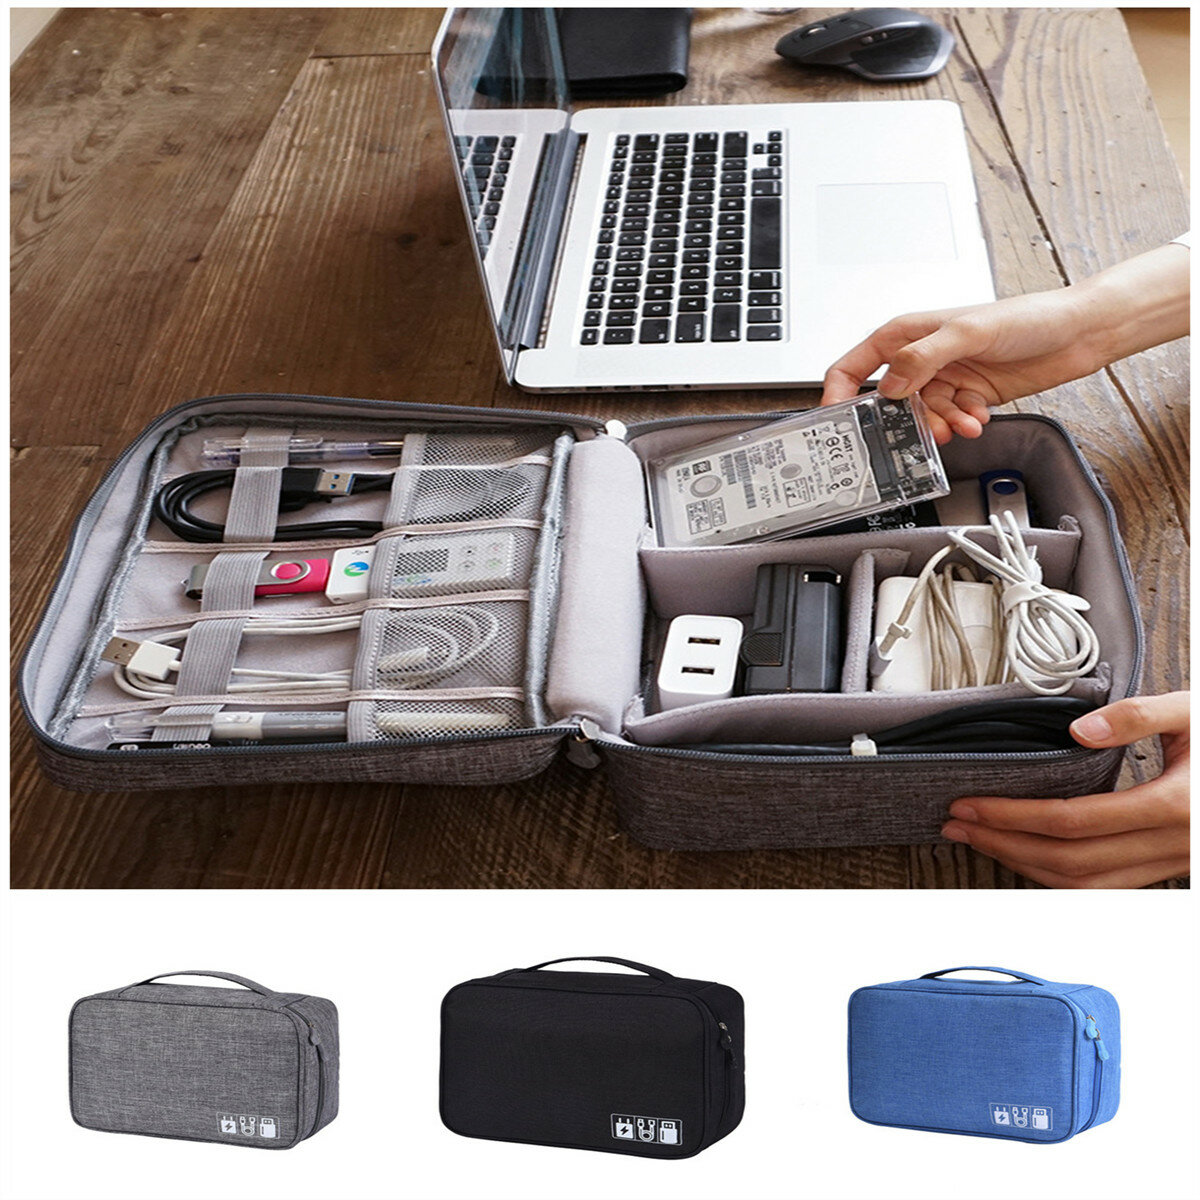 IPRee® Многофункциональная цифровая сумка для хранения кабелей, зарядных устройств и наушников для использования на открытом воздухе во время путешествий.